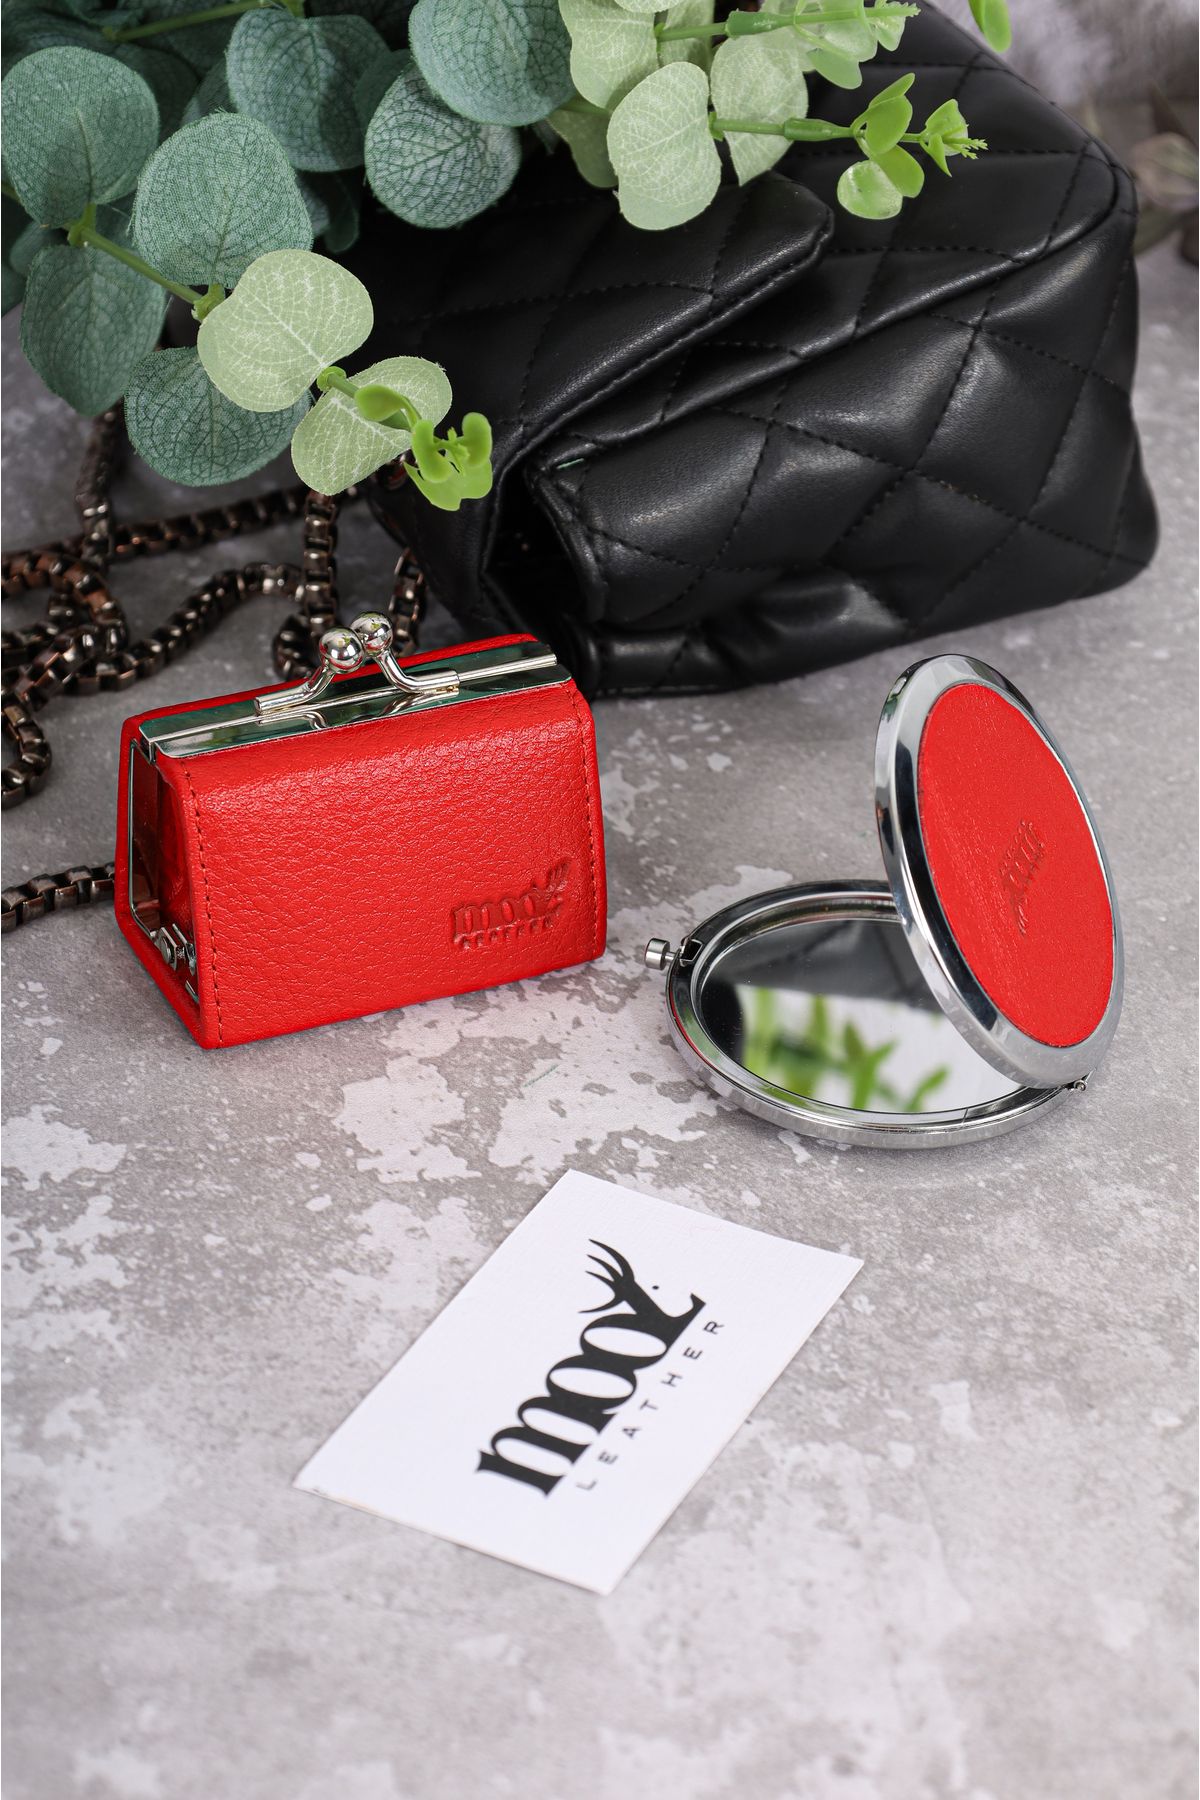 Mooz Leather Florida Kırmızı Hakiki Deri Küçük Takı Çantası Ve Cep Aynası Kadın Çanta Aksesuar Seti